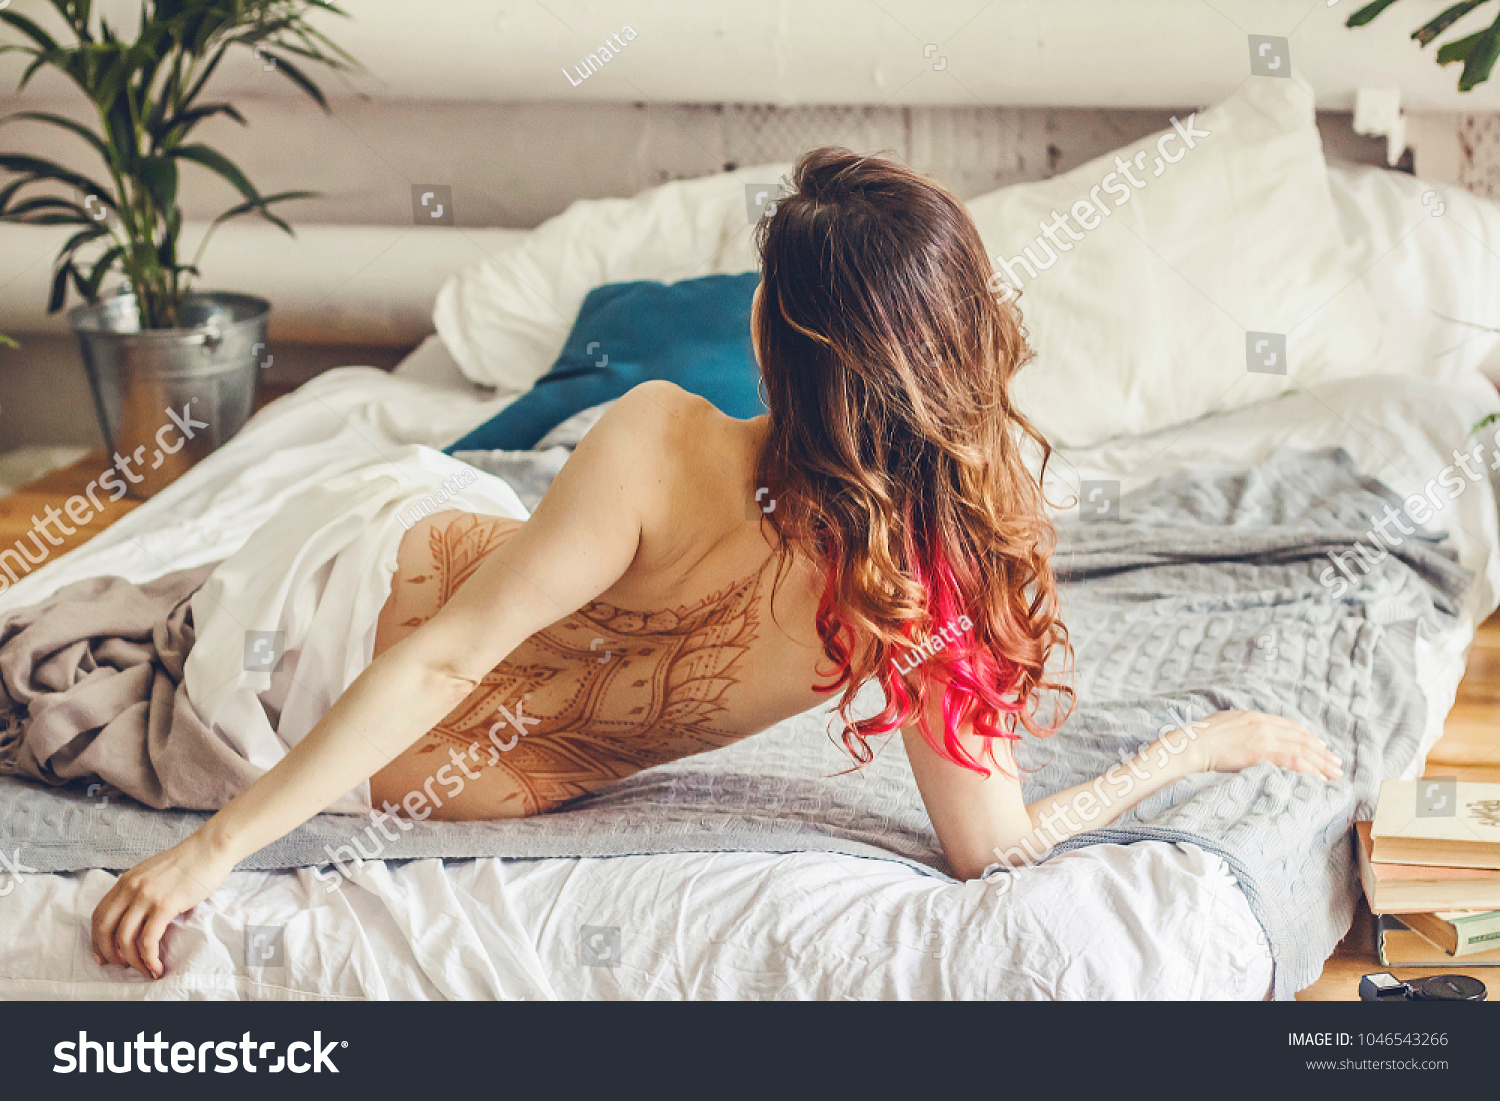 Nude Women Sleeping